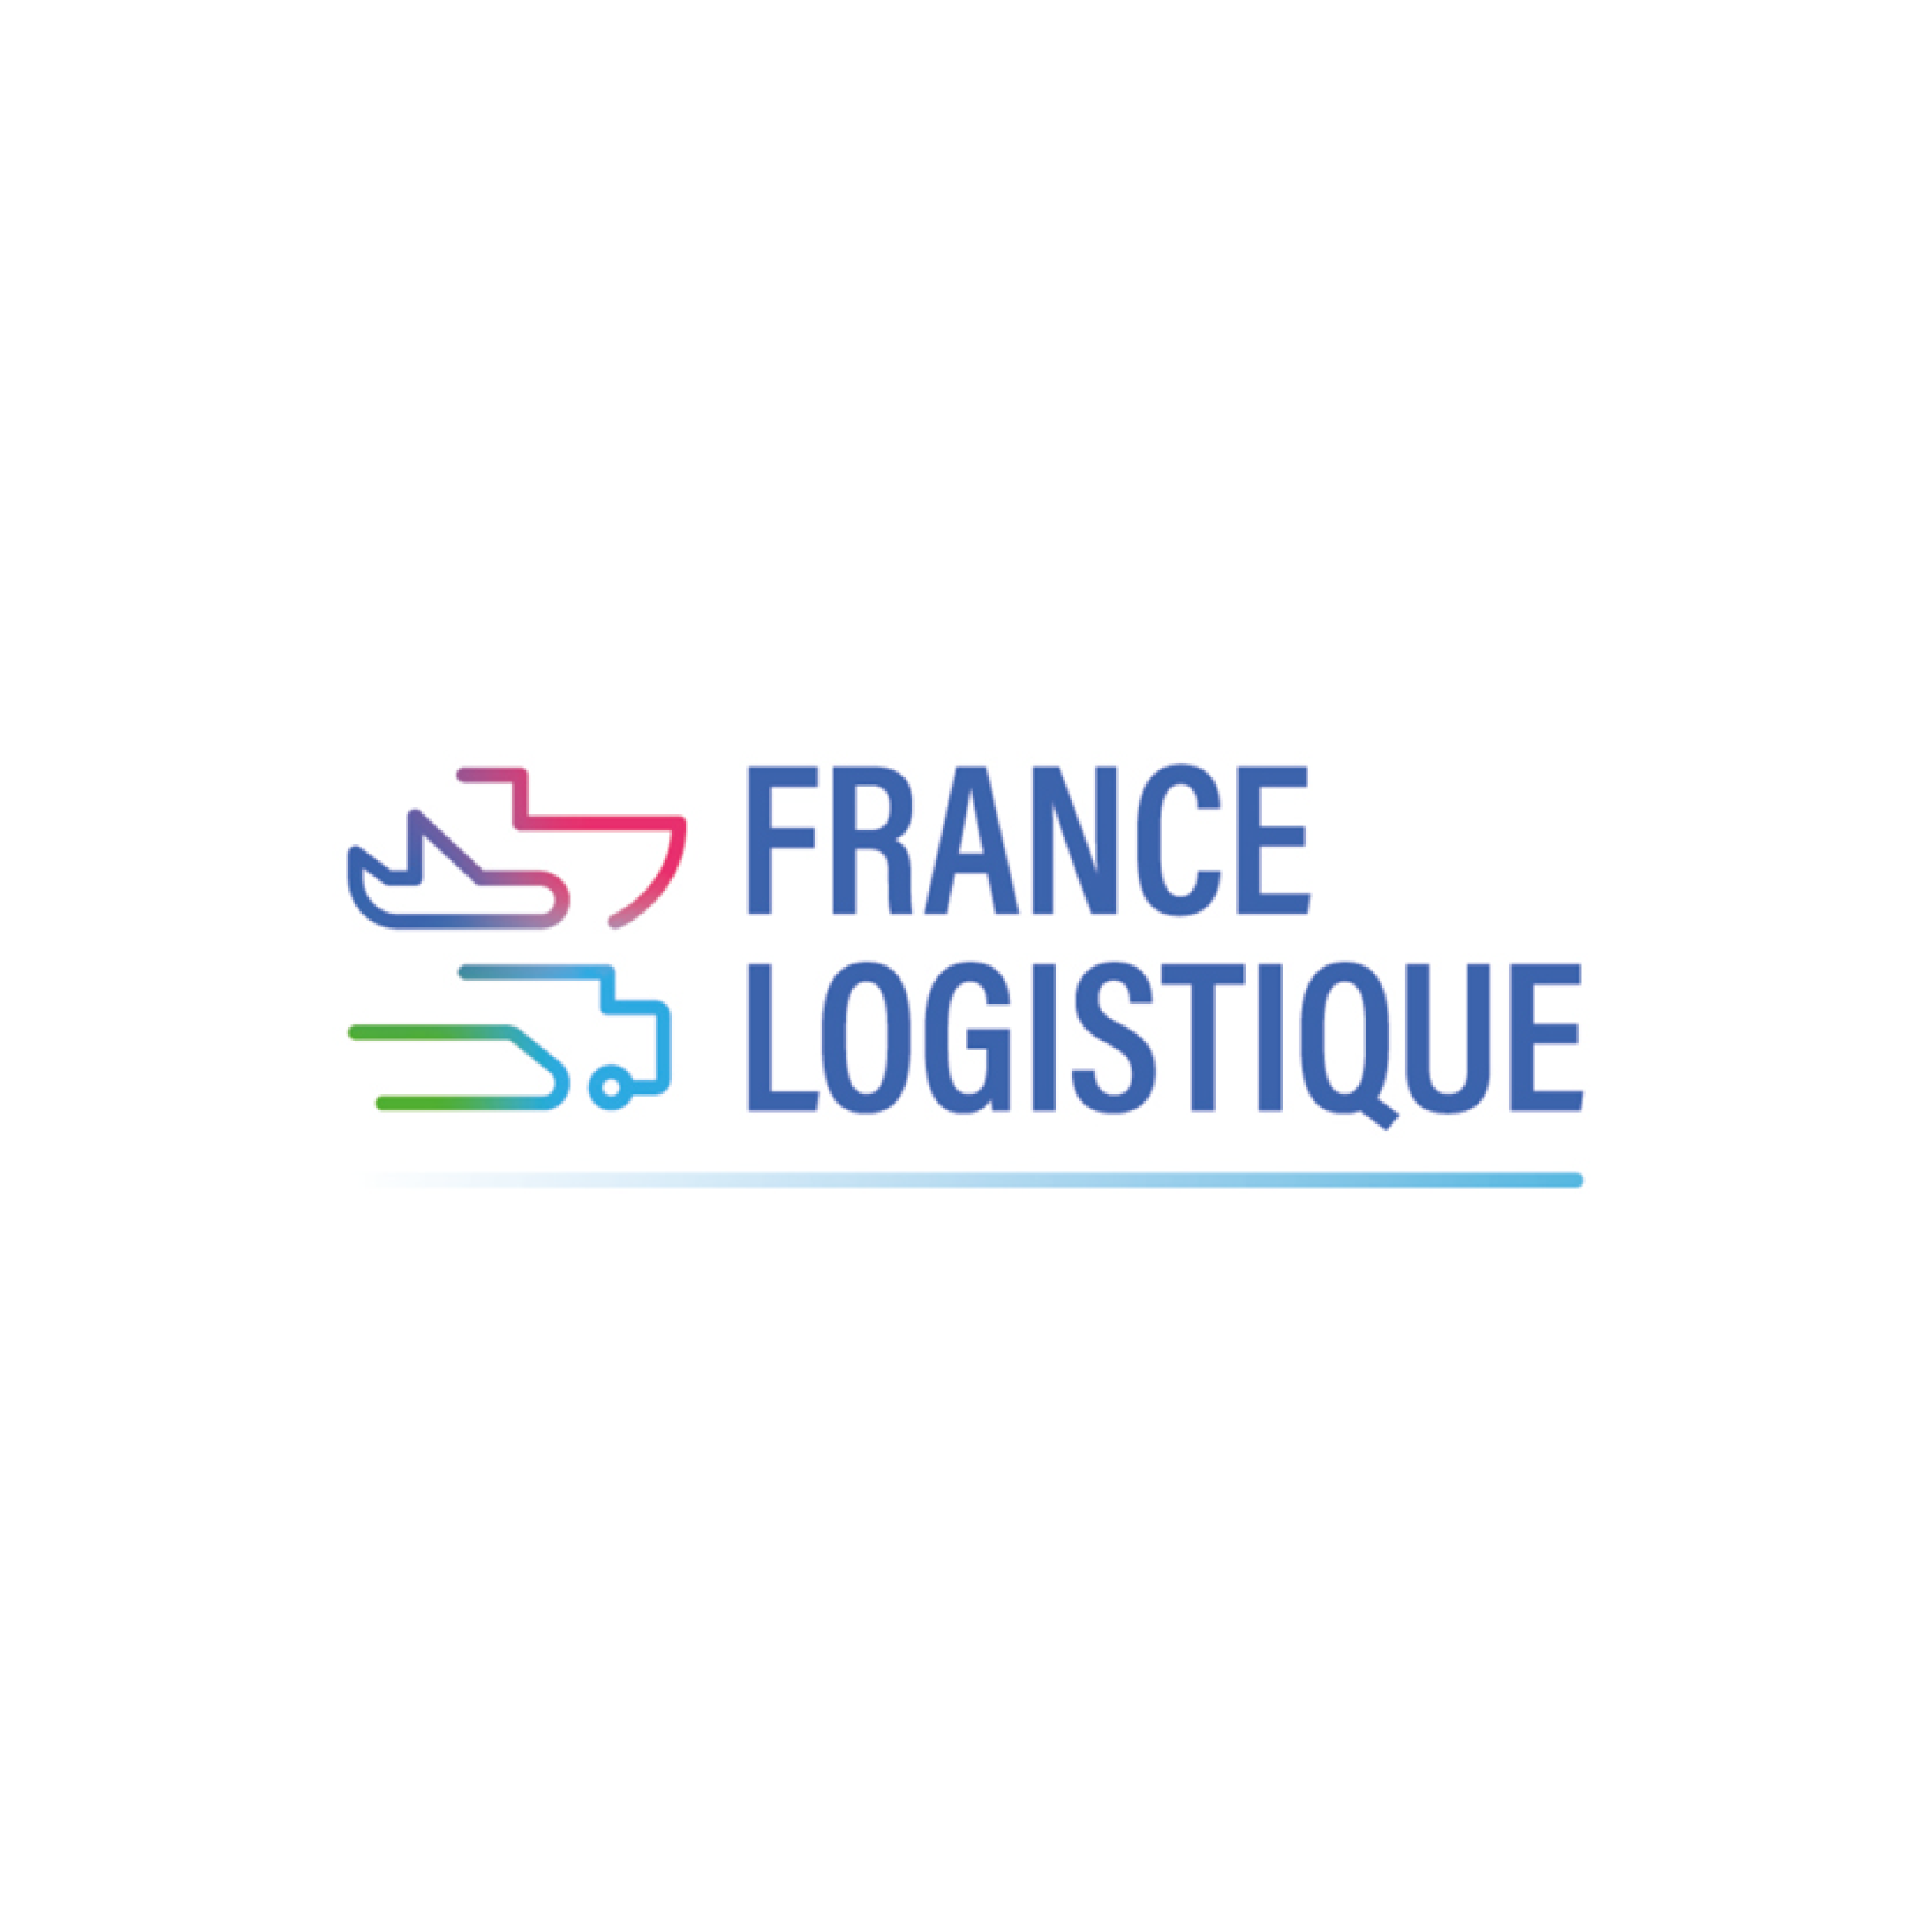 France Logistique